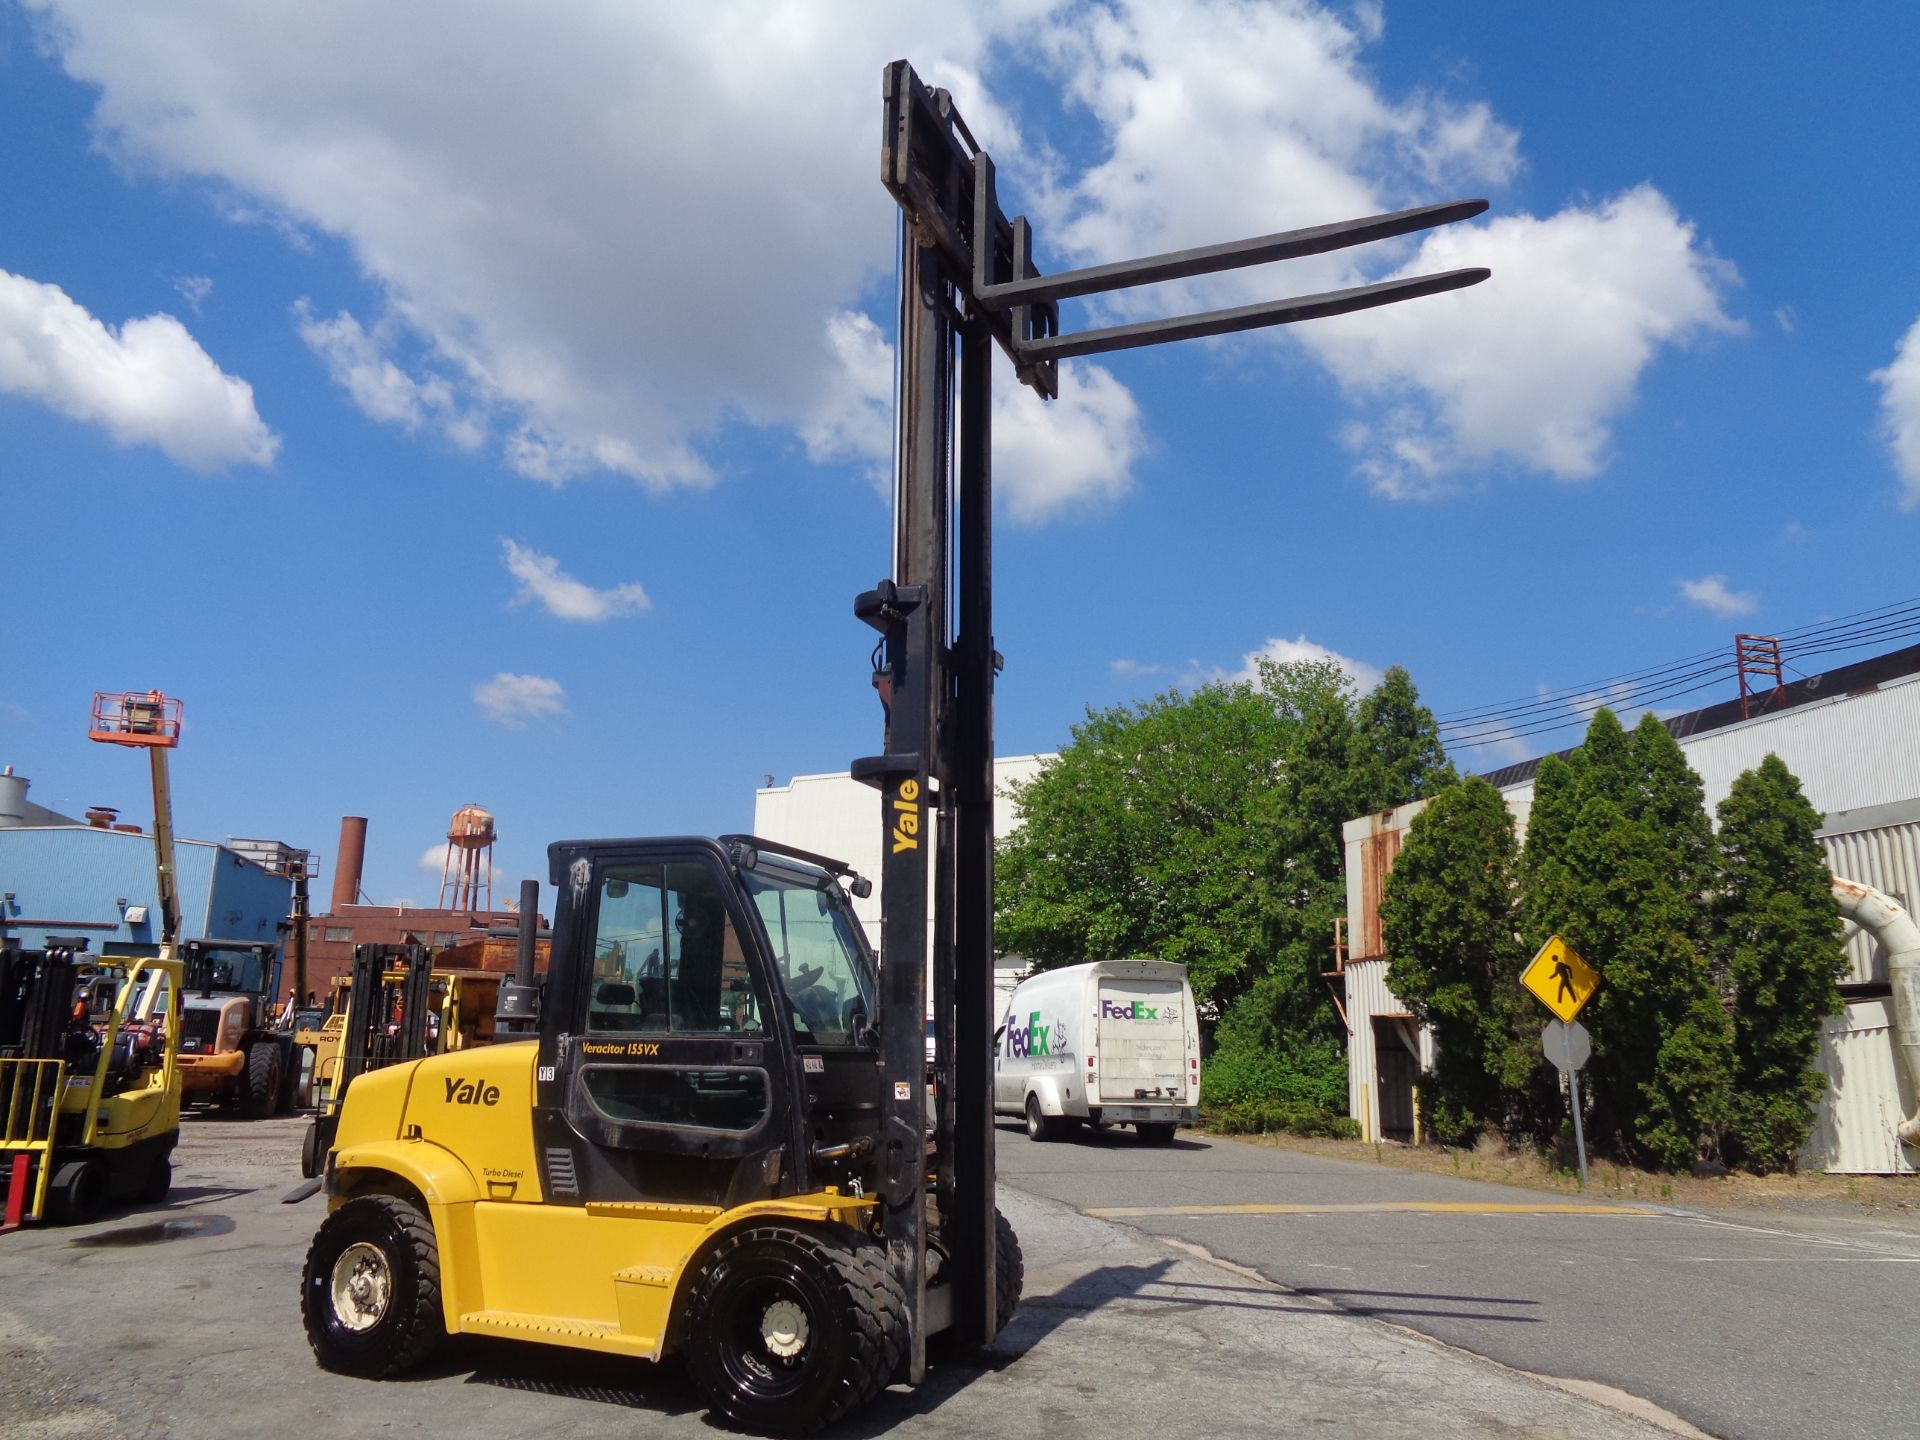 2016 Yale GDP155VXNTBV148 15,500 lb Forklift - Image 8 of 17